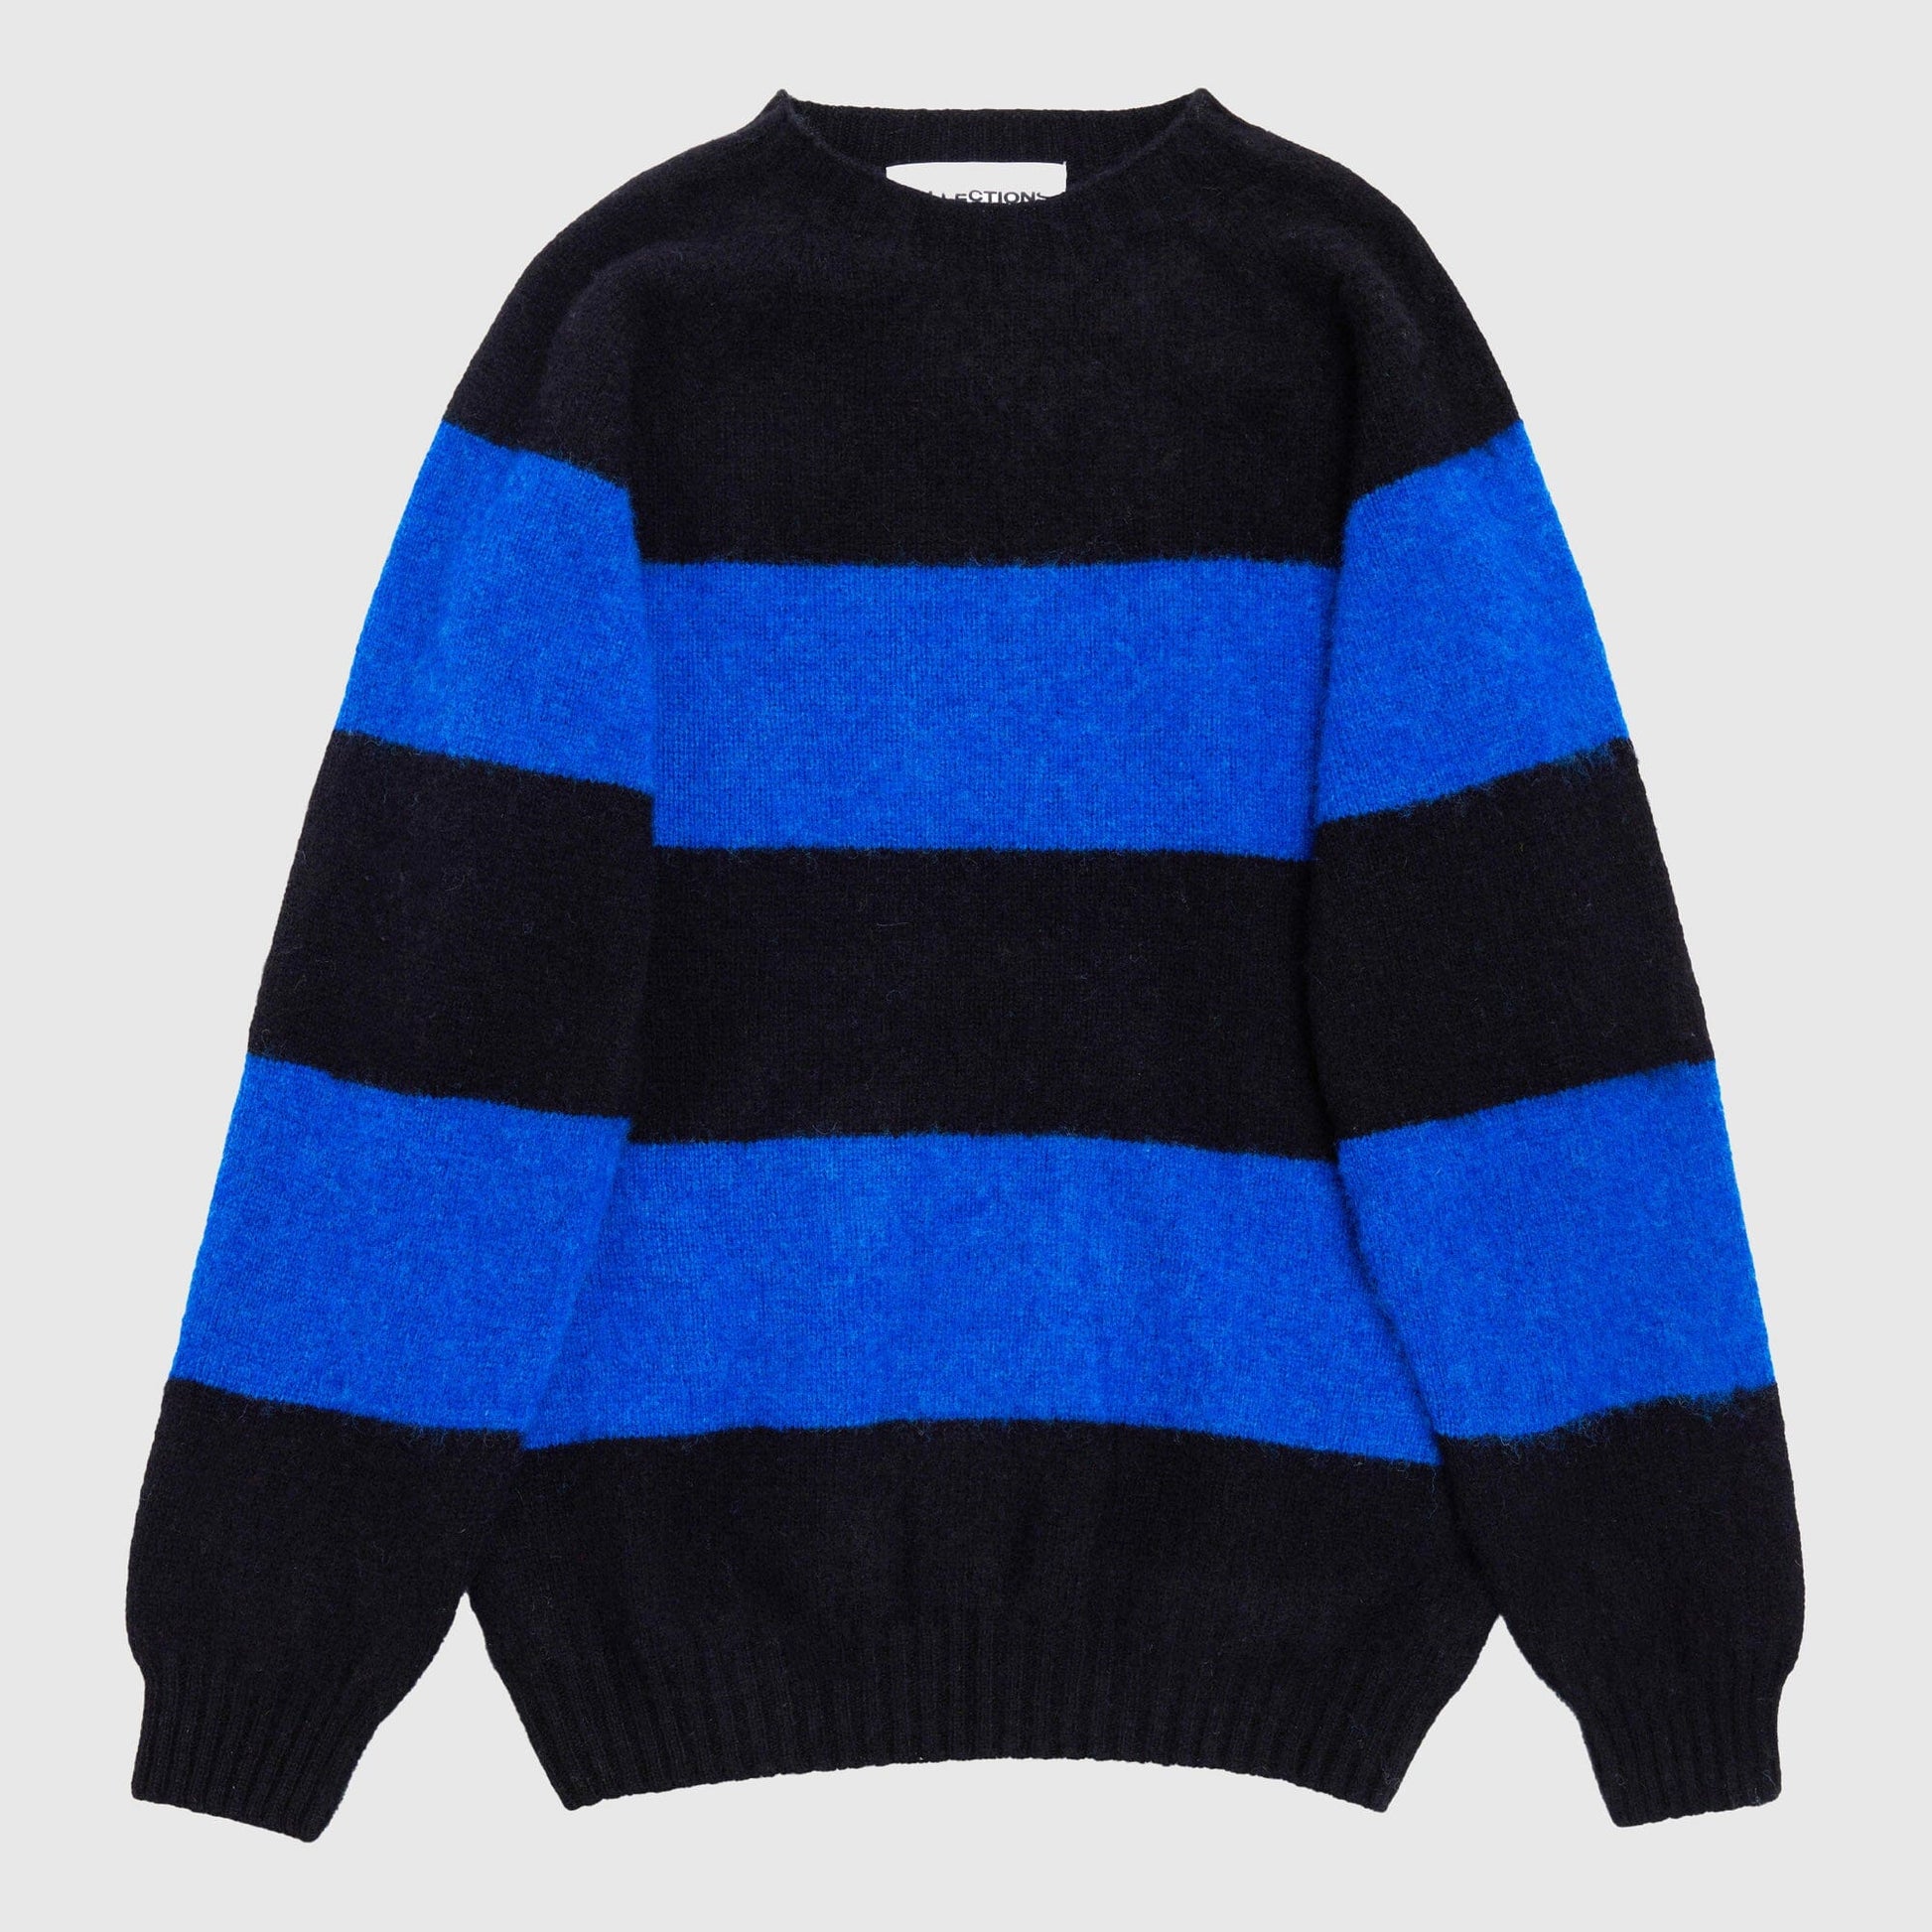 F5 Tavish Sweater - Black / Deep Blue Knitwear F5 Collections 